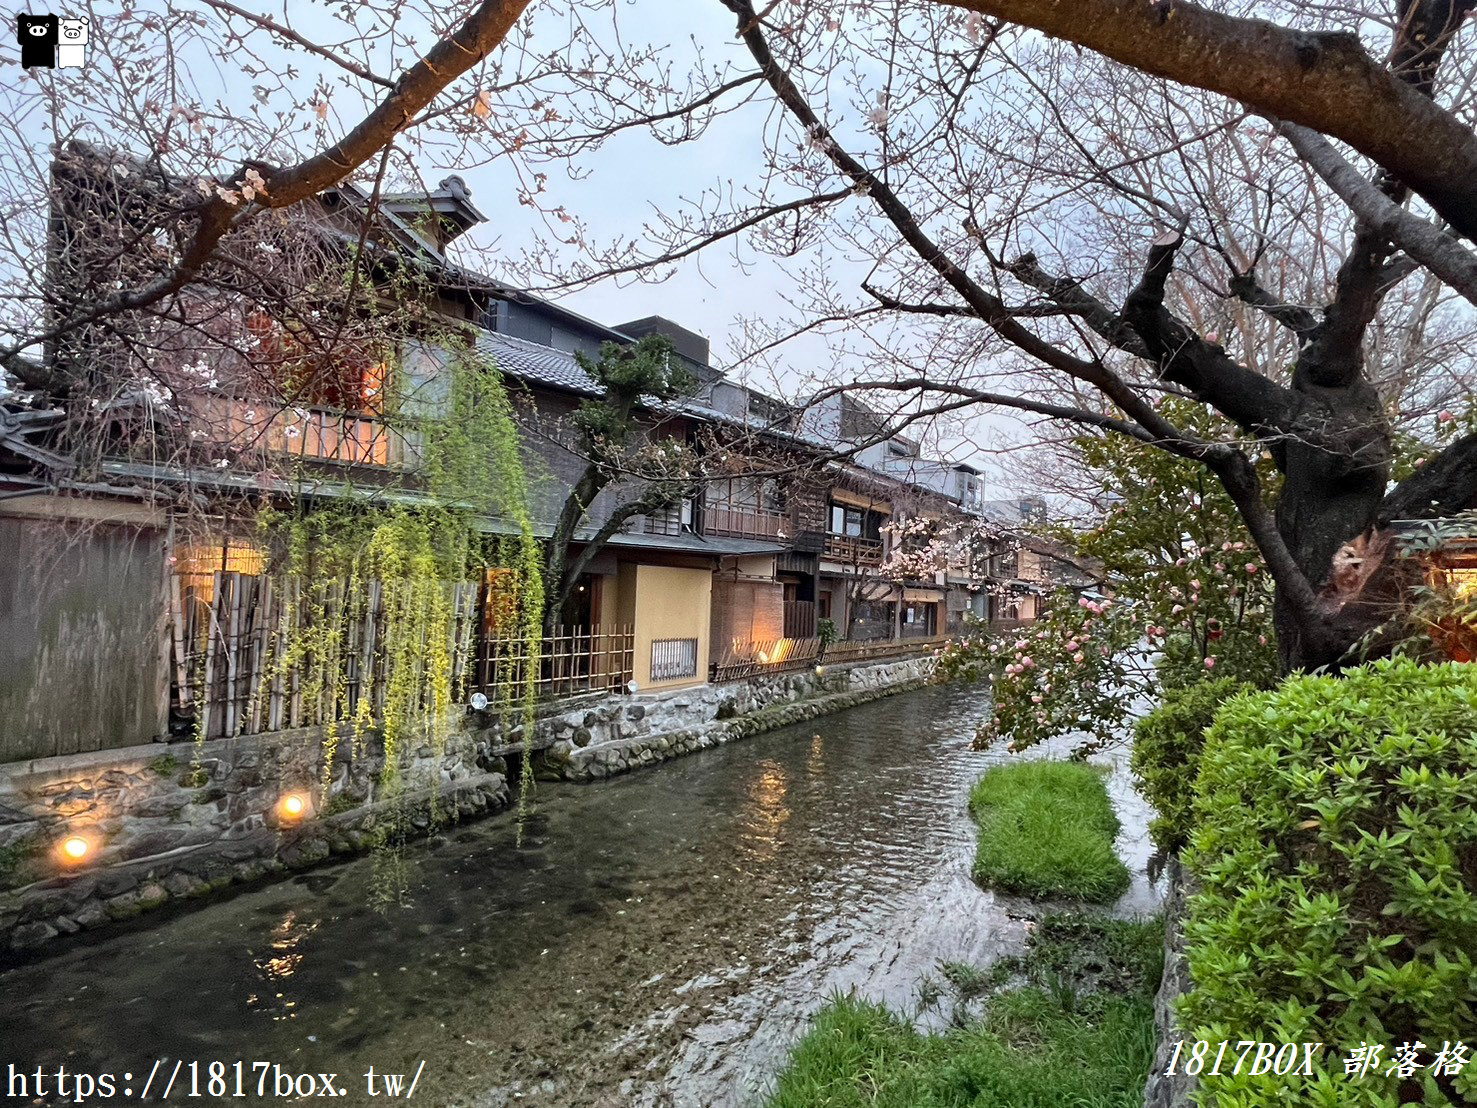 【京都景點】祇園白川筋。小橋流水。古色古香的町家建築